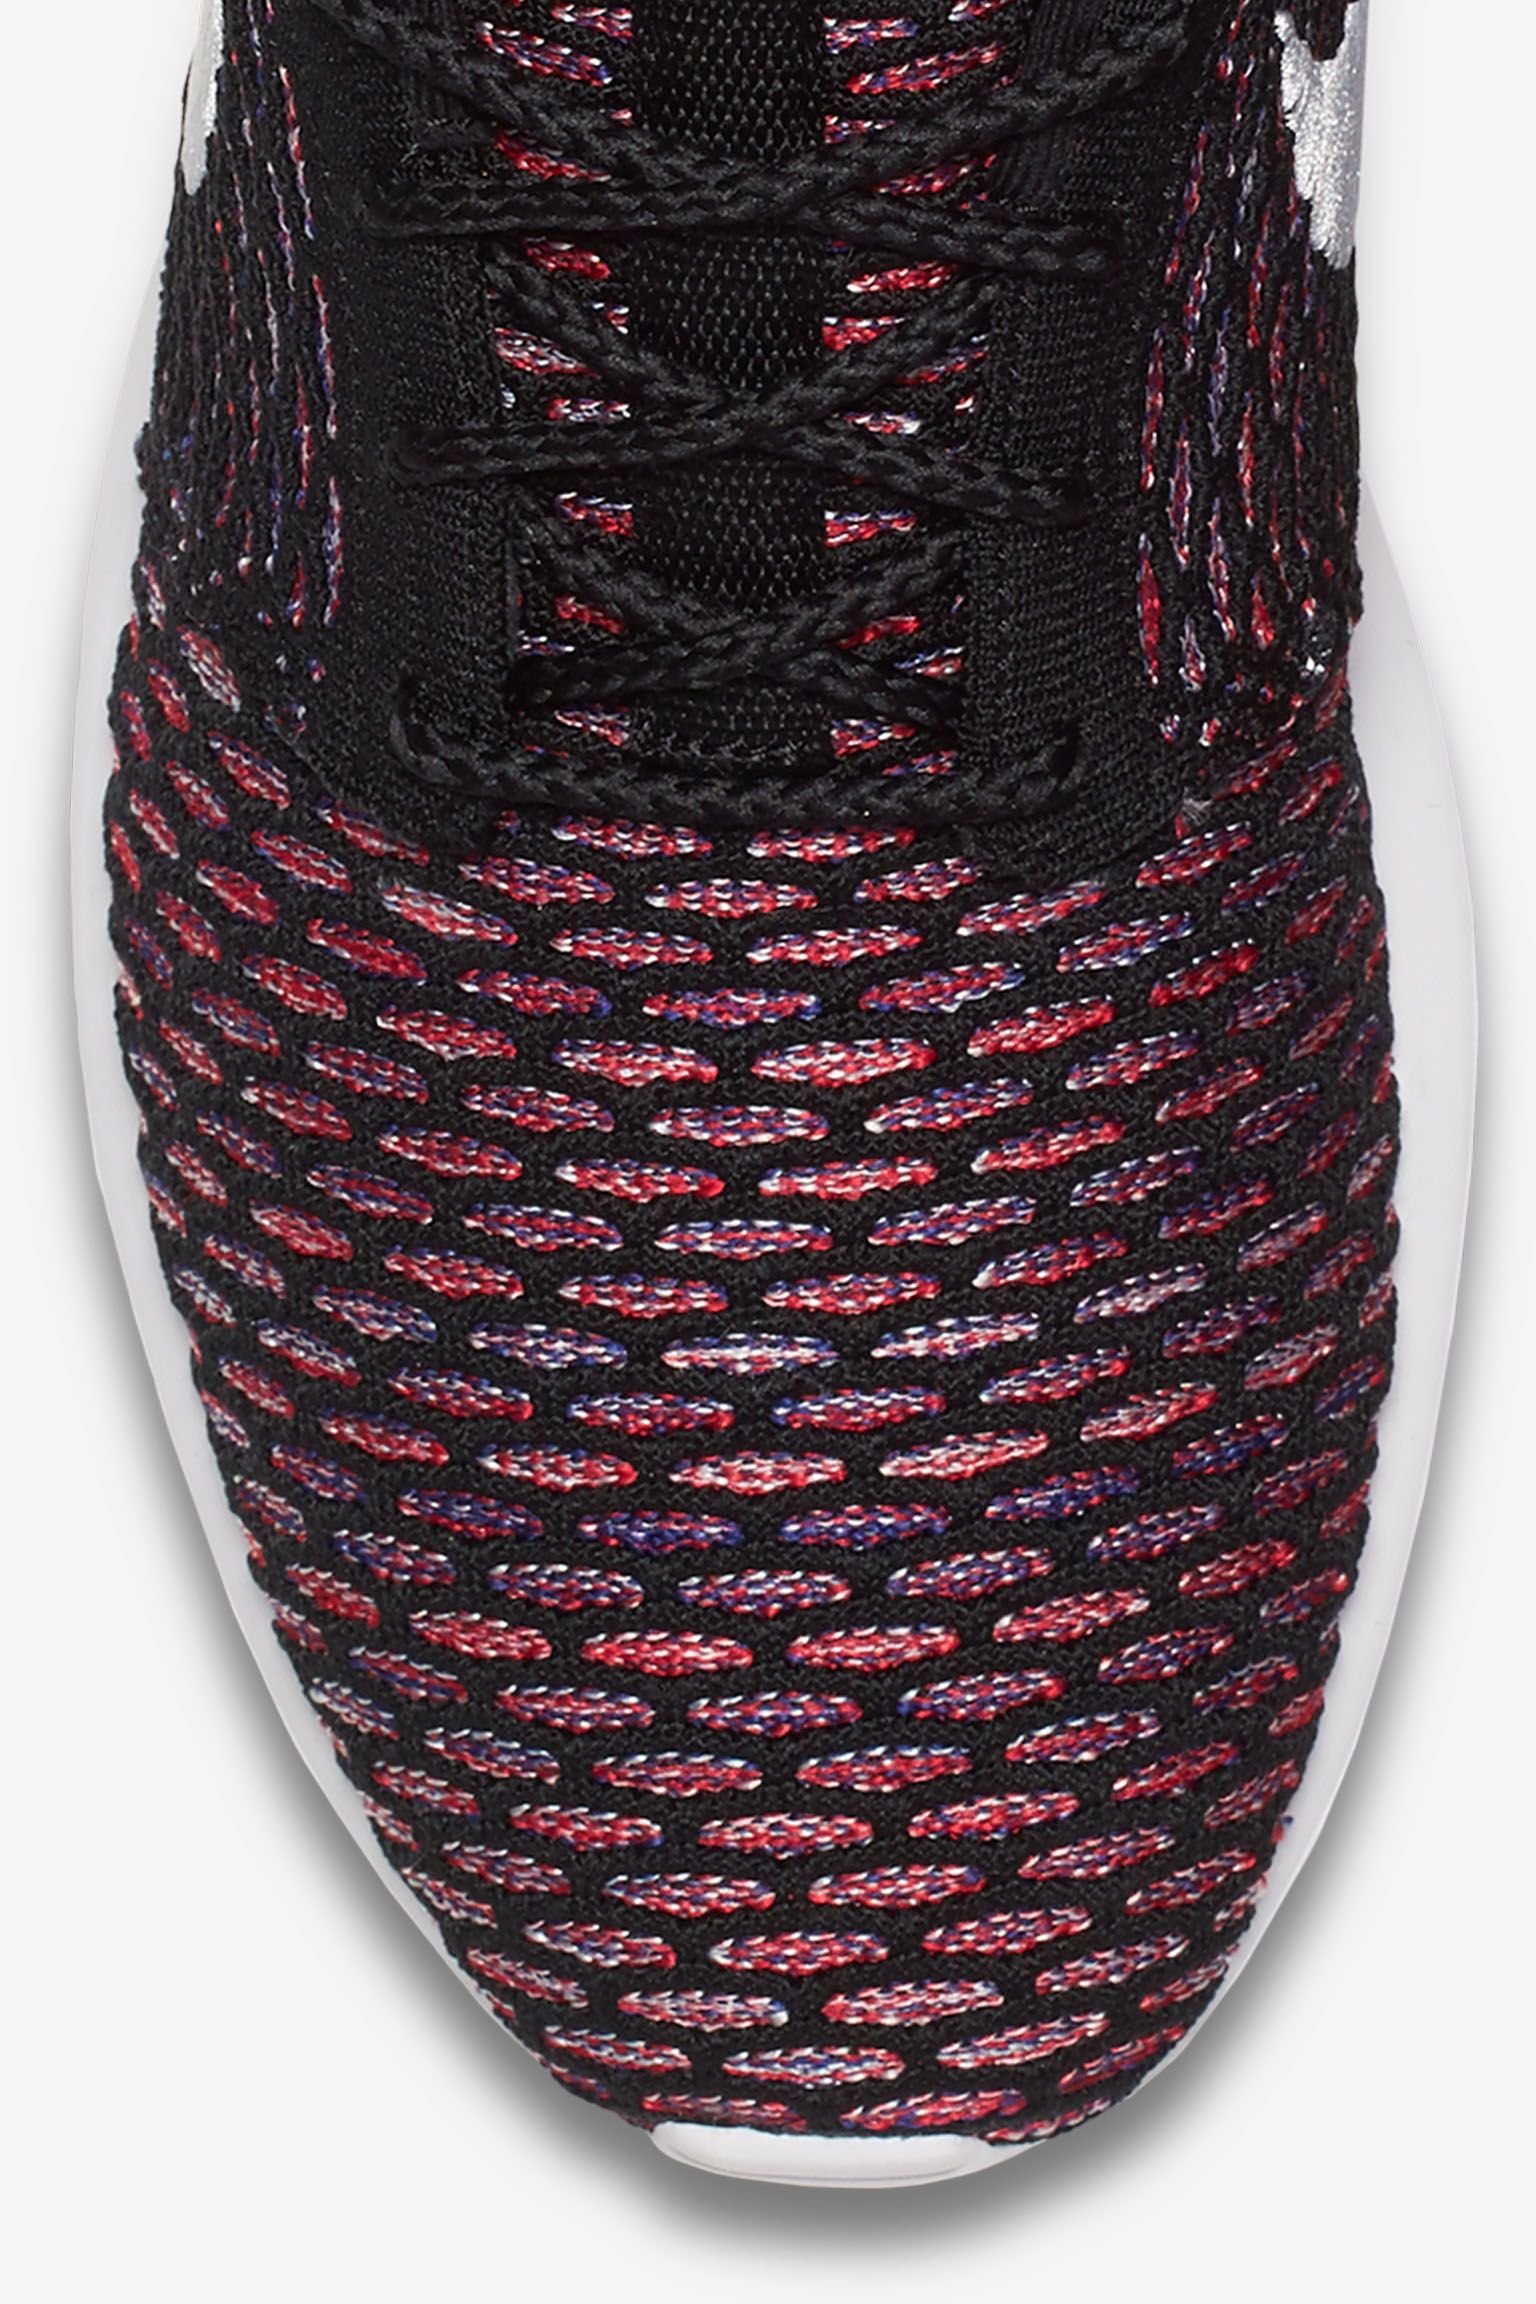 Molester Geweldig Heel boos Nike Roshe One Flyknit 'Vibrant Multi-Color'. Nike SNKRS